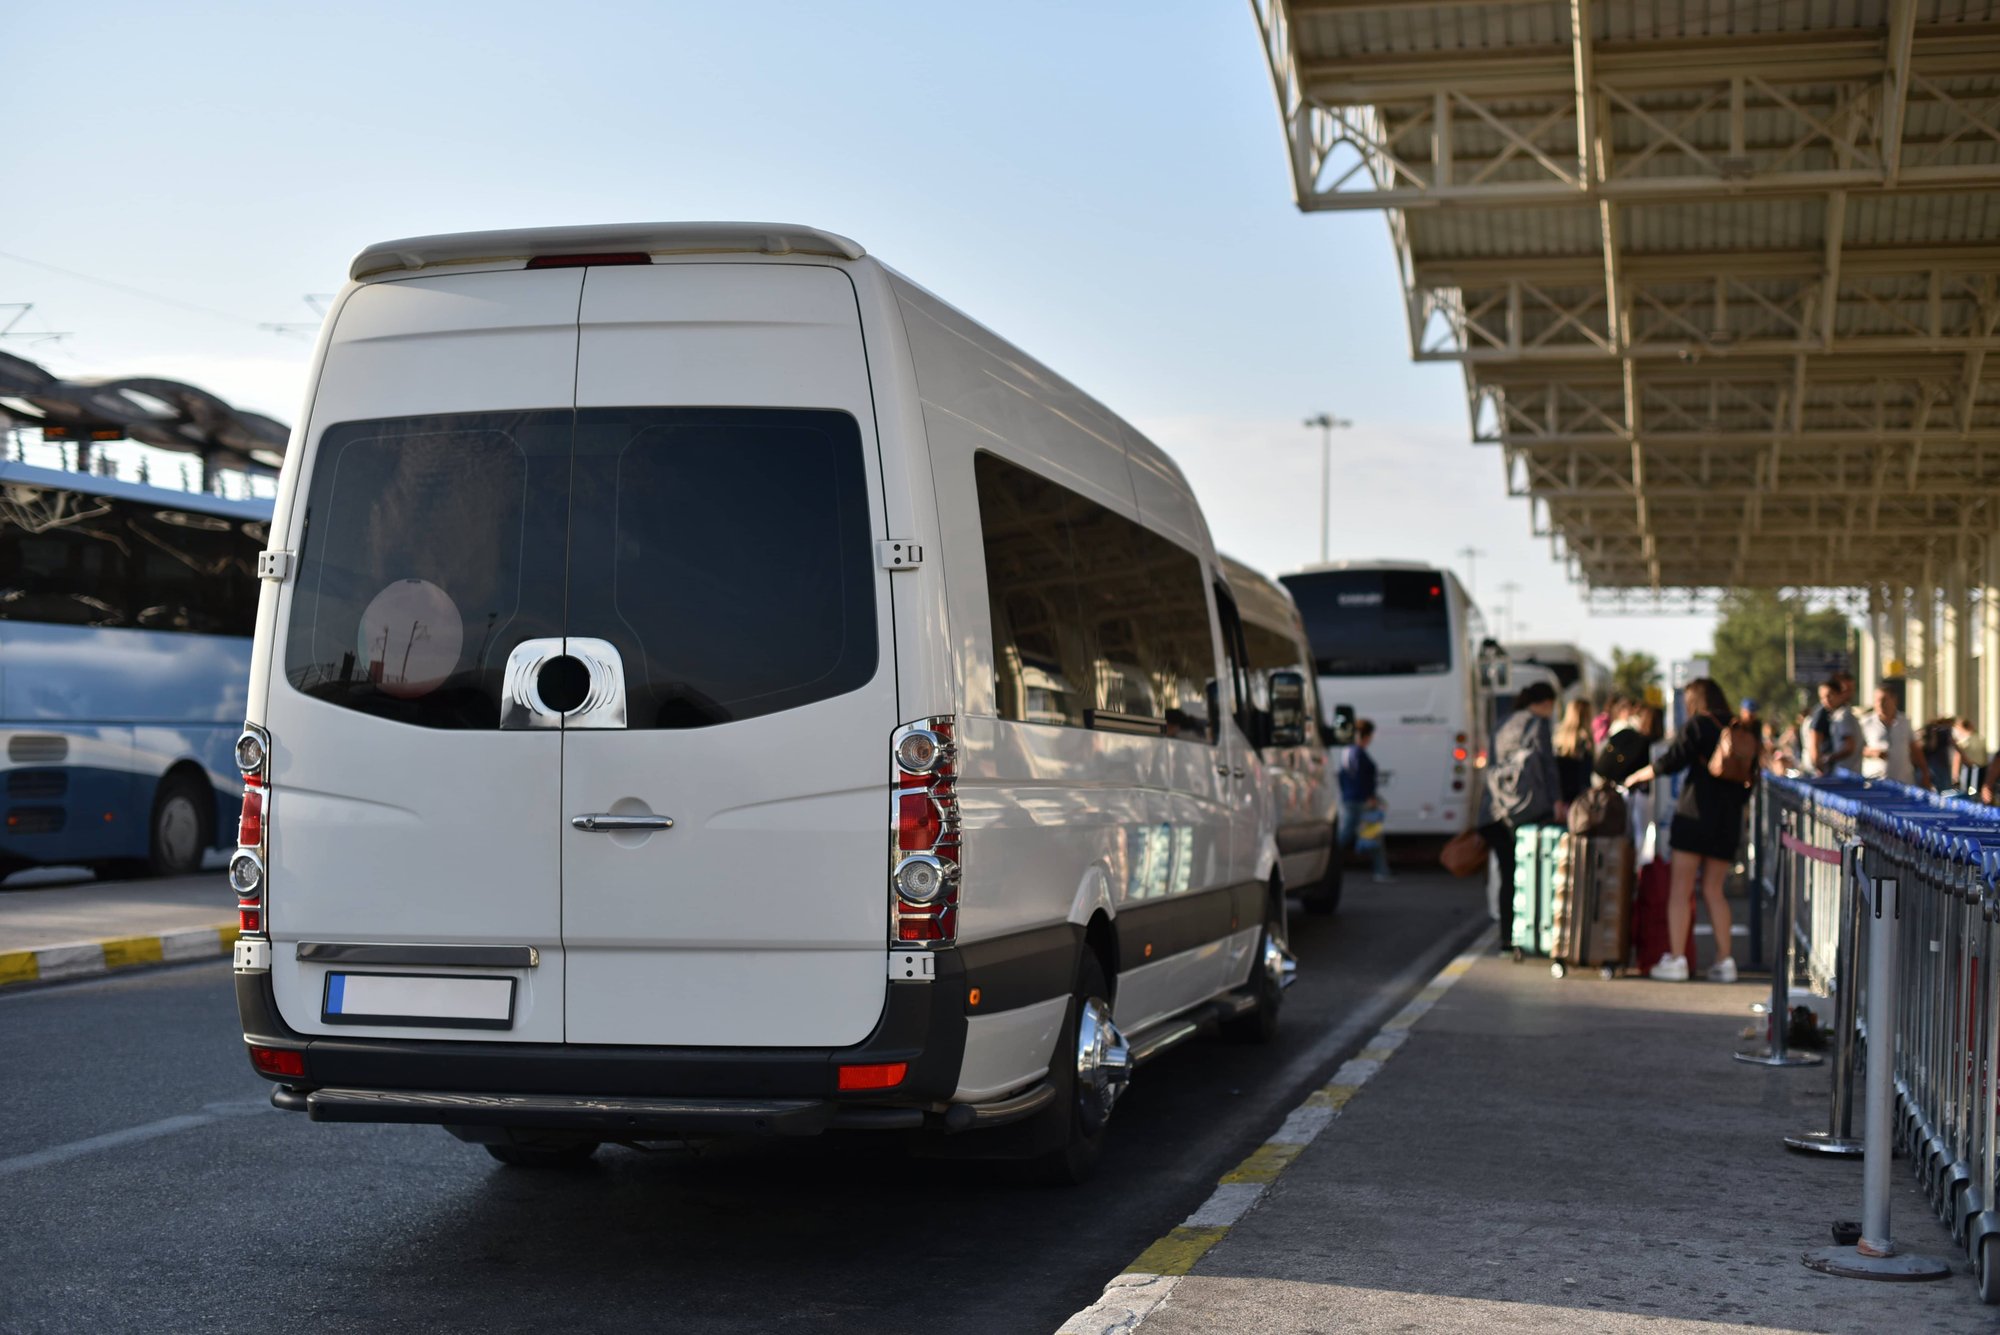 white paratransit vehicle parked at a terminal awaiting passengers